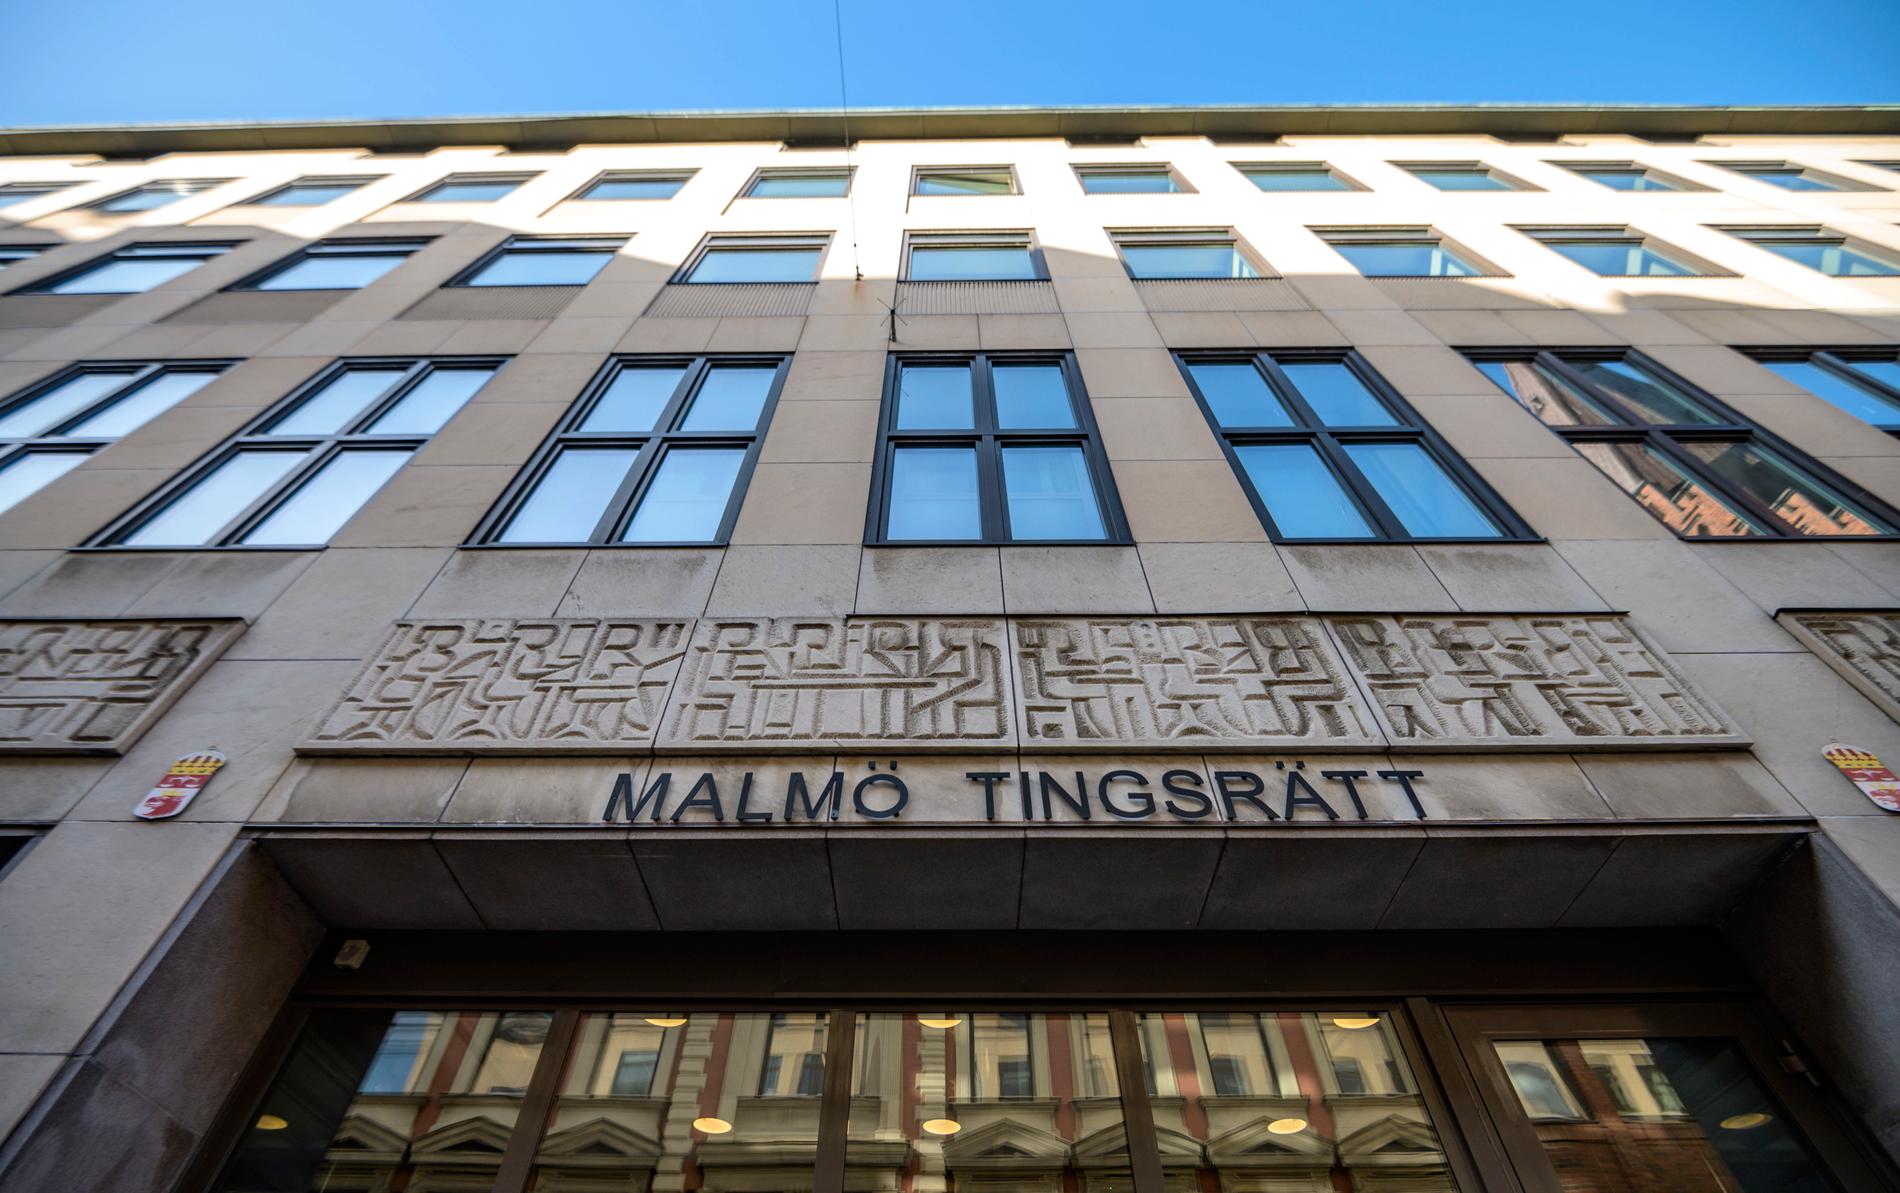 En kvinna i 20-årsåldern döms av Malmö tingsrätt till fyra månaders fängelse för att ha ljugit under en rättegång. Arkivbild.